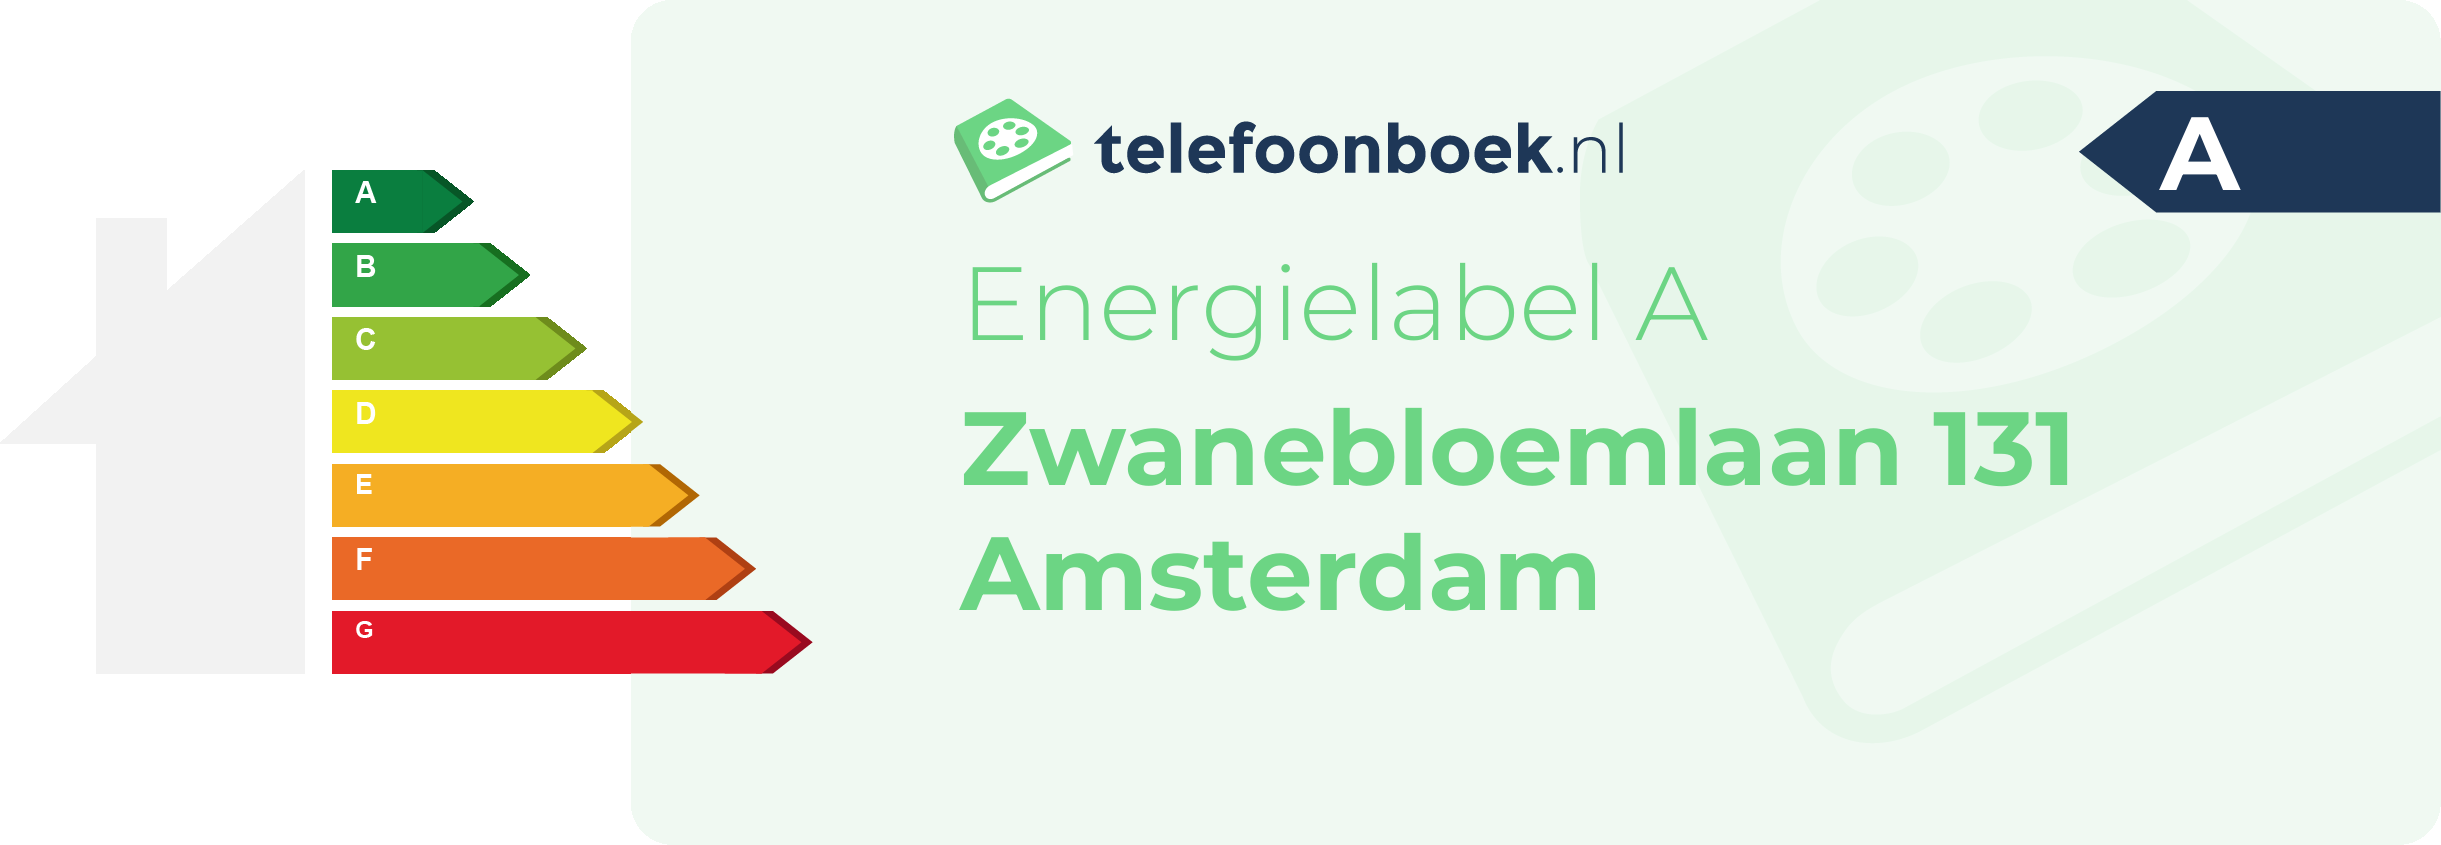 Energielabel Zwanebloemlaan 131 Amsterdam